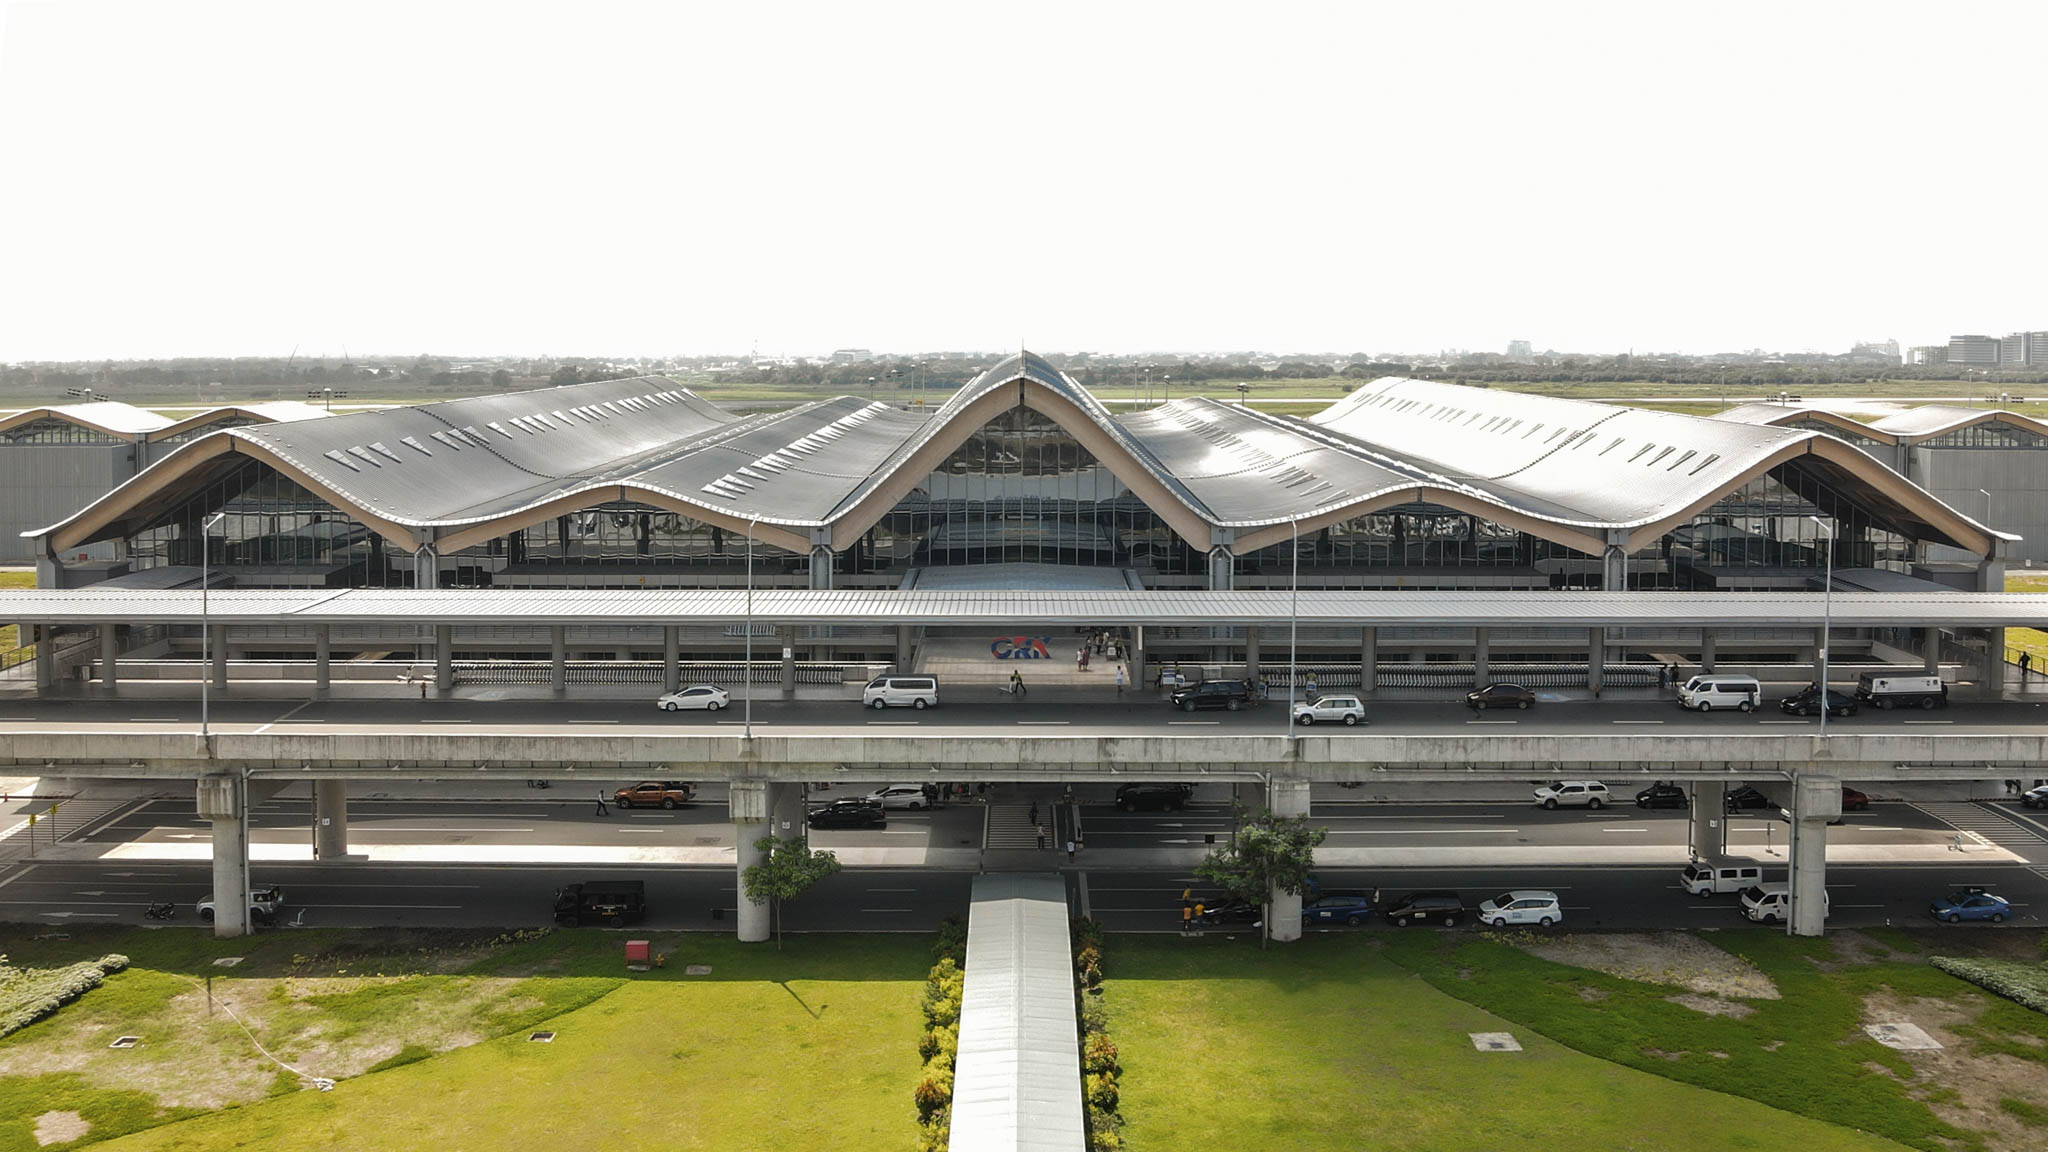 Clark Airport's exterior facade with undulating roofline.